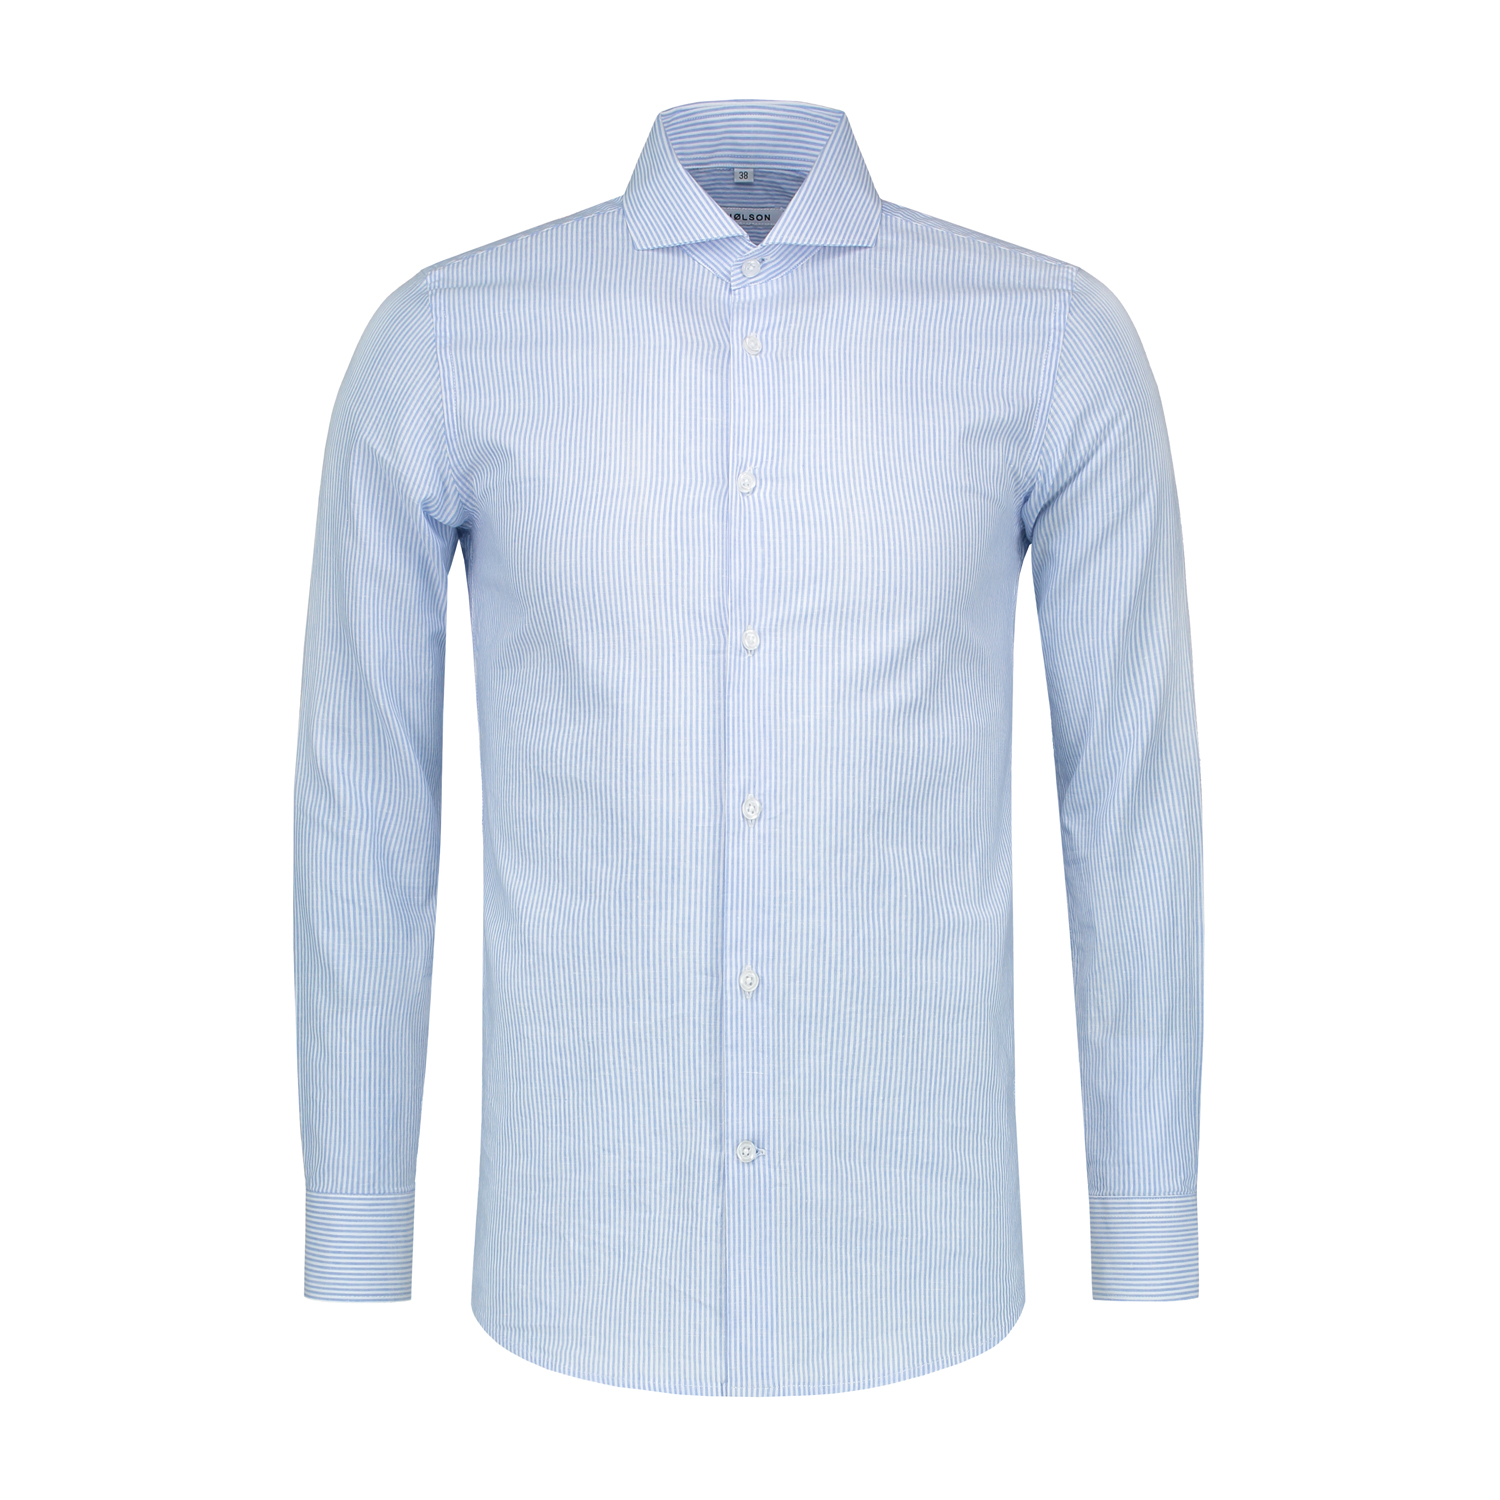 blauw wit gestreept overhemd linnen